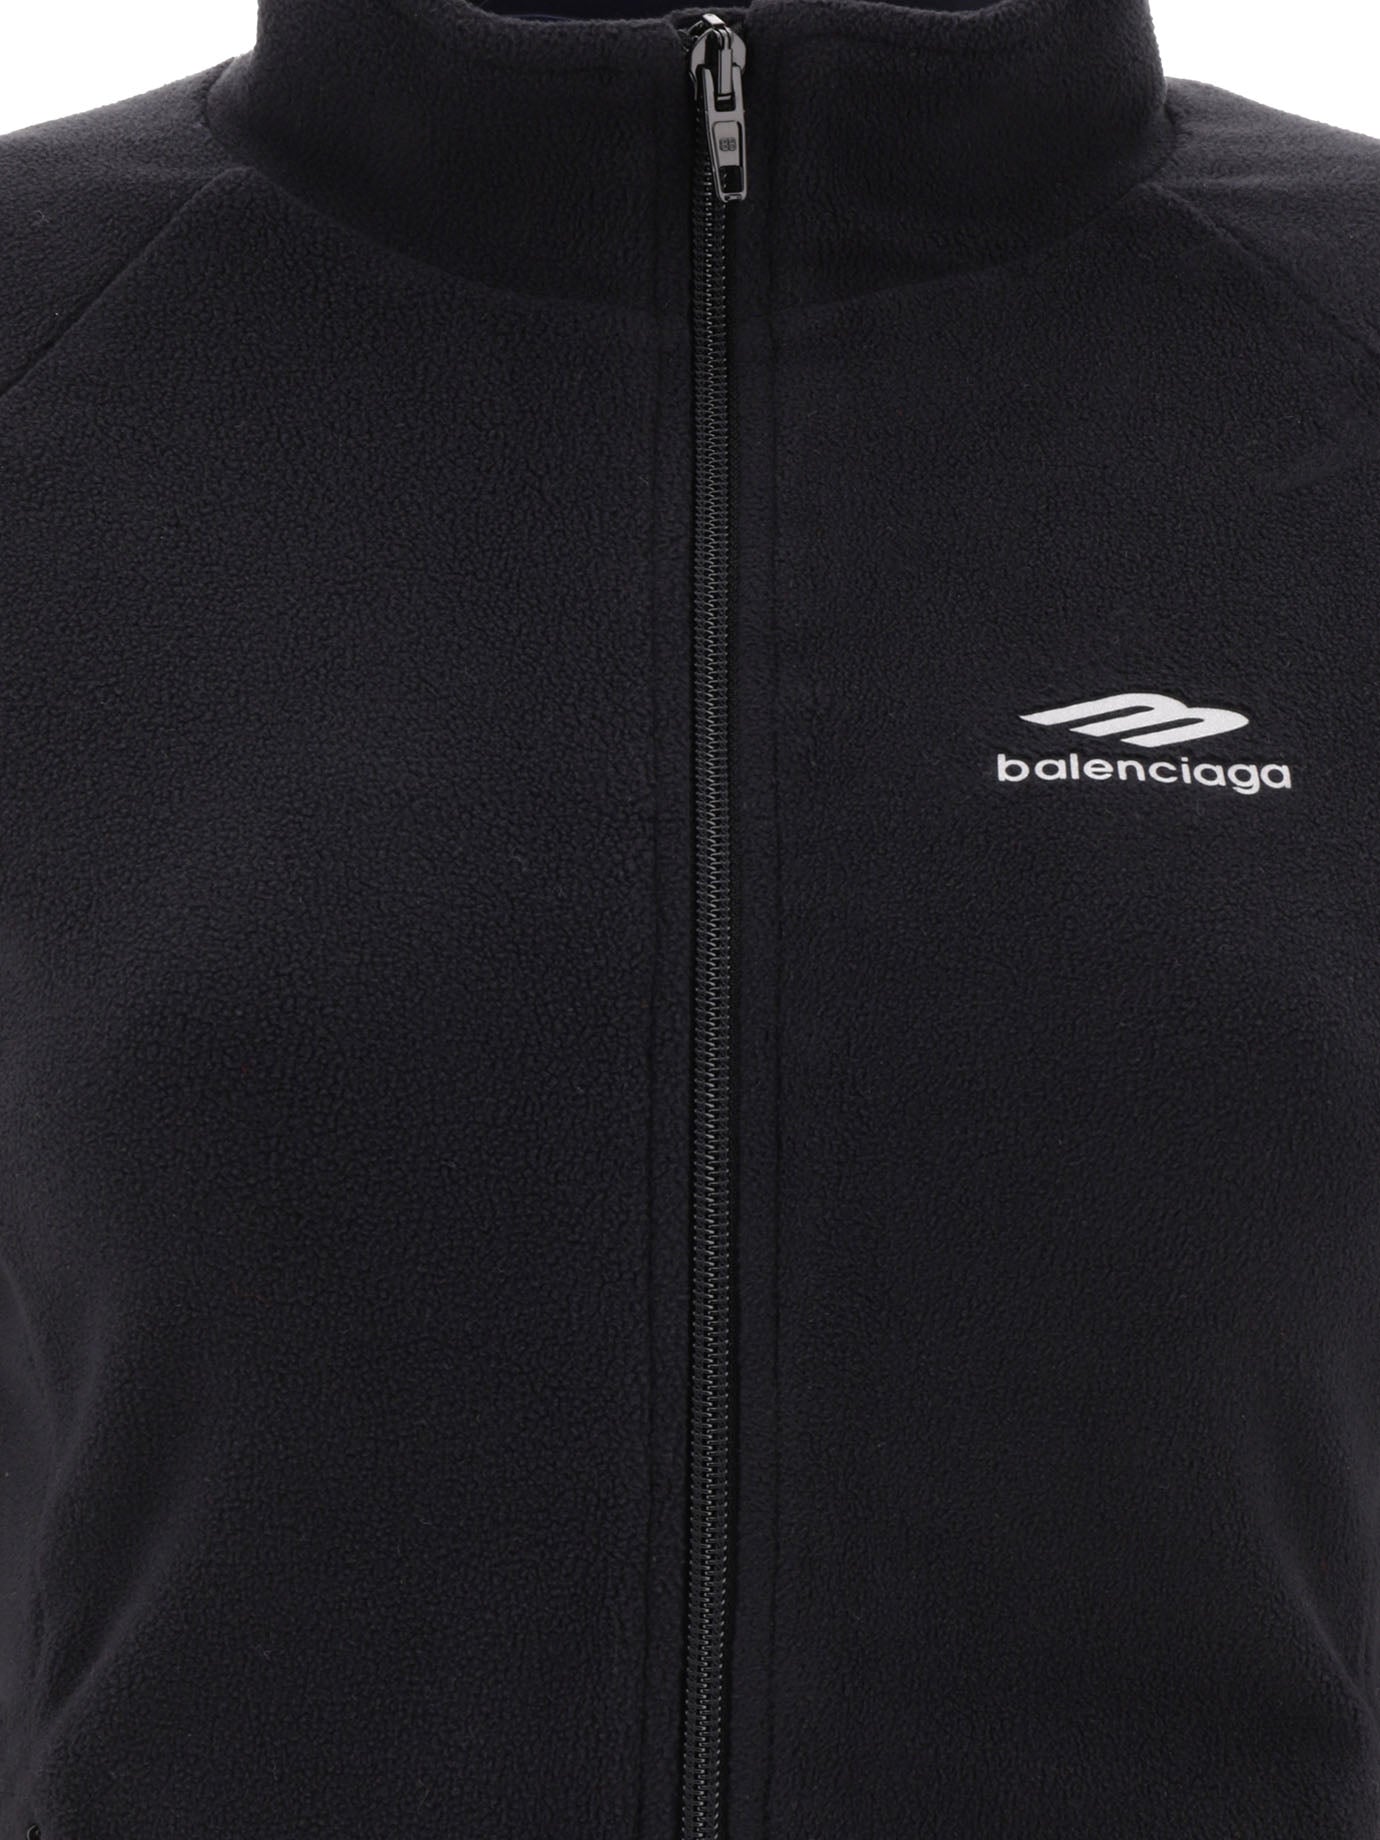 Shop Balenciaga Black Zip-up Sweatshirt With Logo For Women